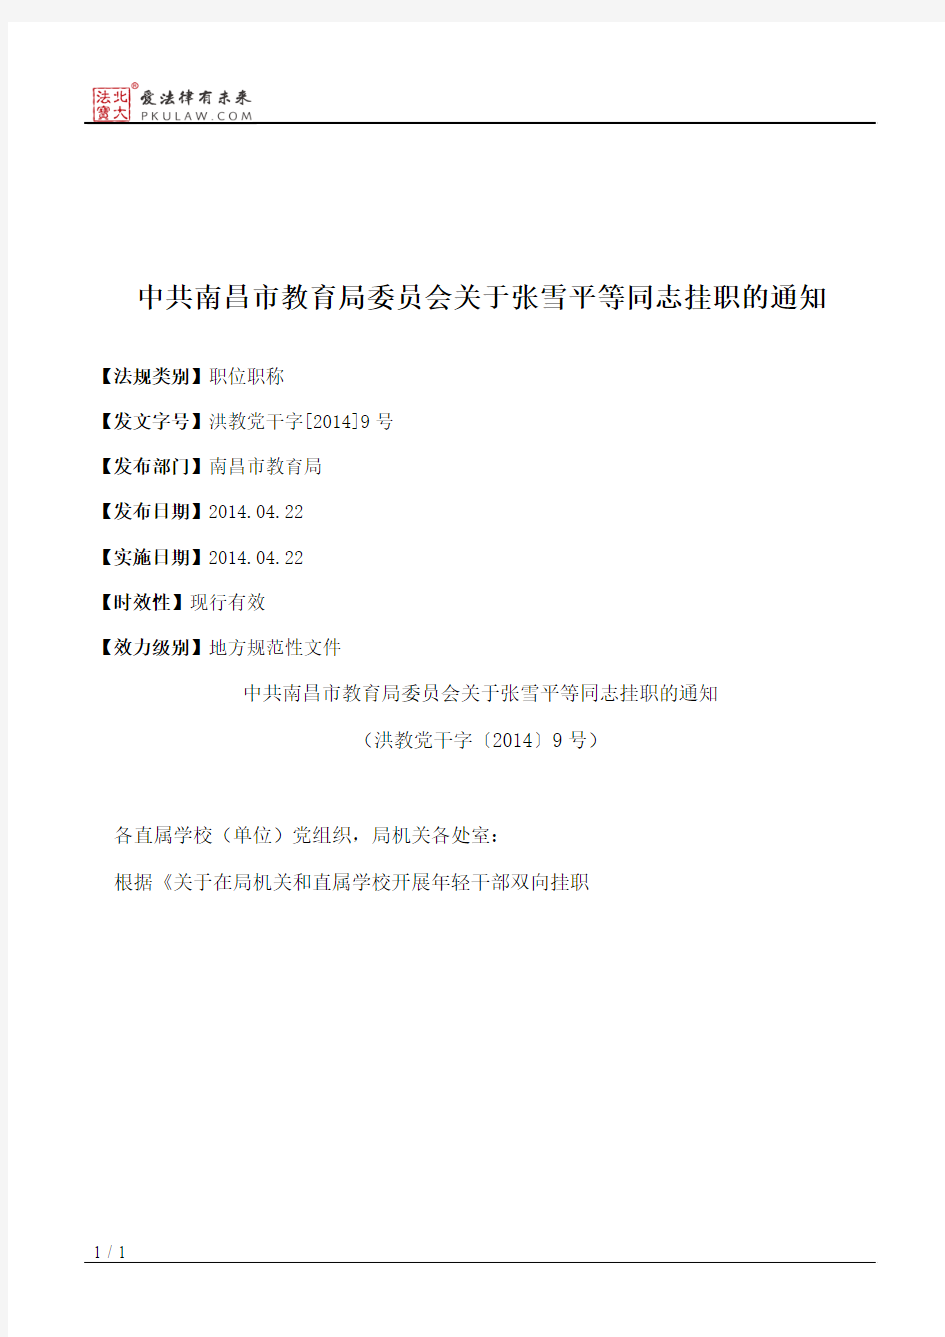 中共南昌市教育局委员会关于张雪平等同志挂职的通知